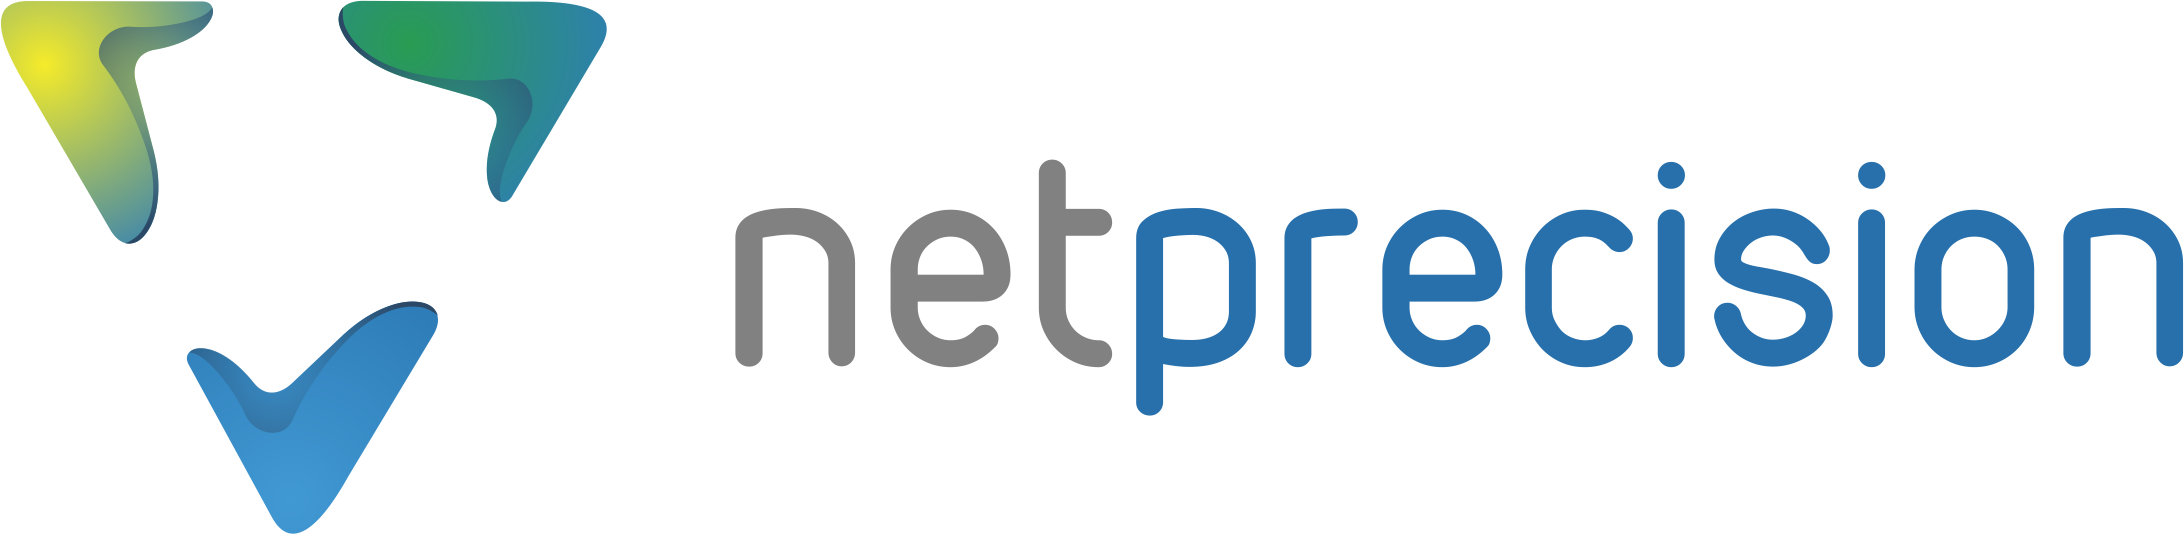 Logo Netprecision